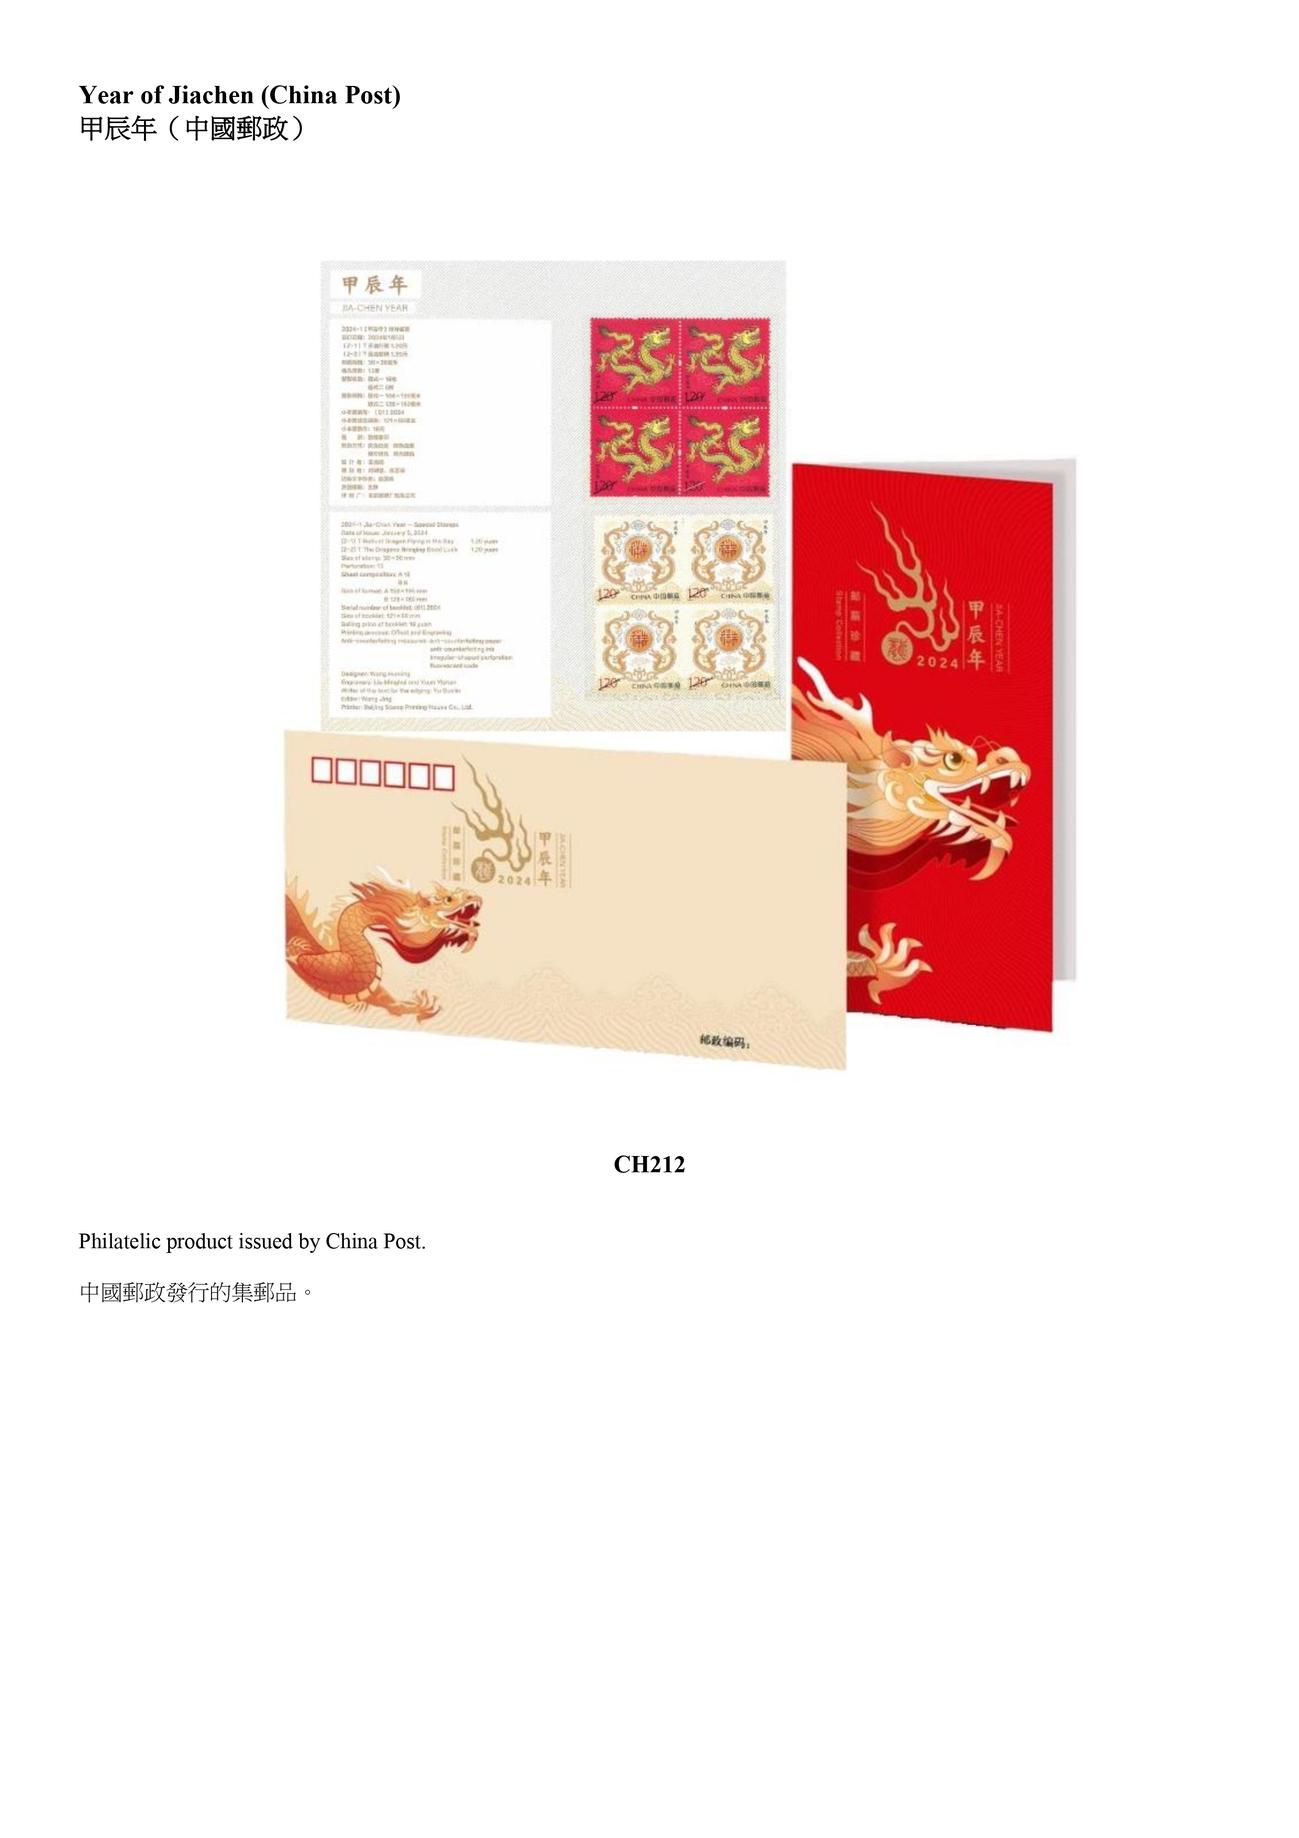 香港郵政今日（四月二十九日）公布，由中國郵政、澳門郵電及其他郵政機關，包括澳洲、馬恩島、列支敦士登、新西蘭和聯合國發行的精選集郵品，將於明日（四月三十日）起發售。圖示中國郵政發行的集郵品。